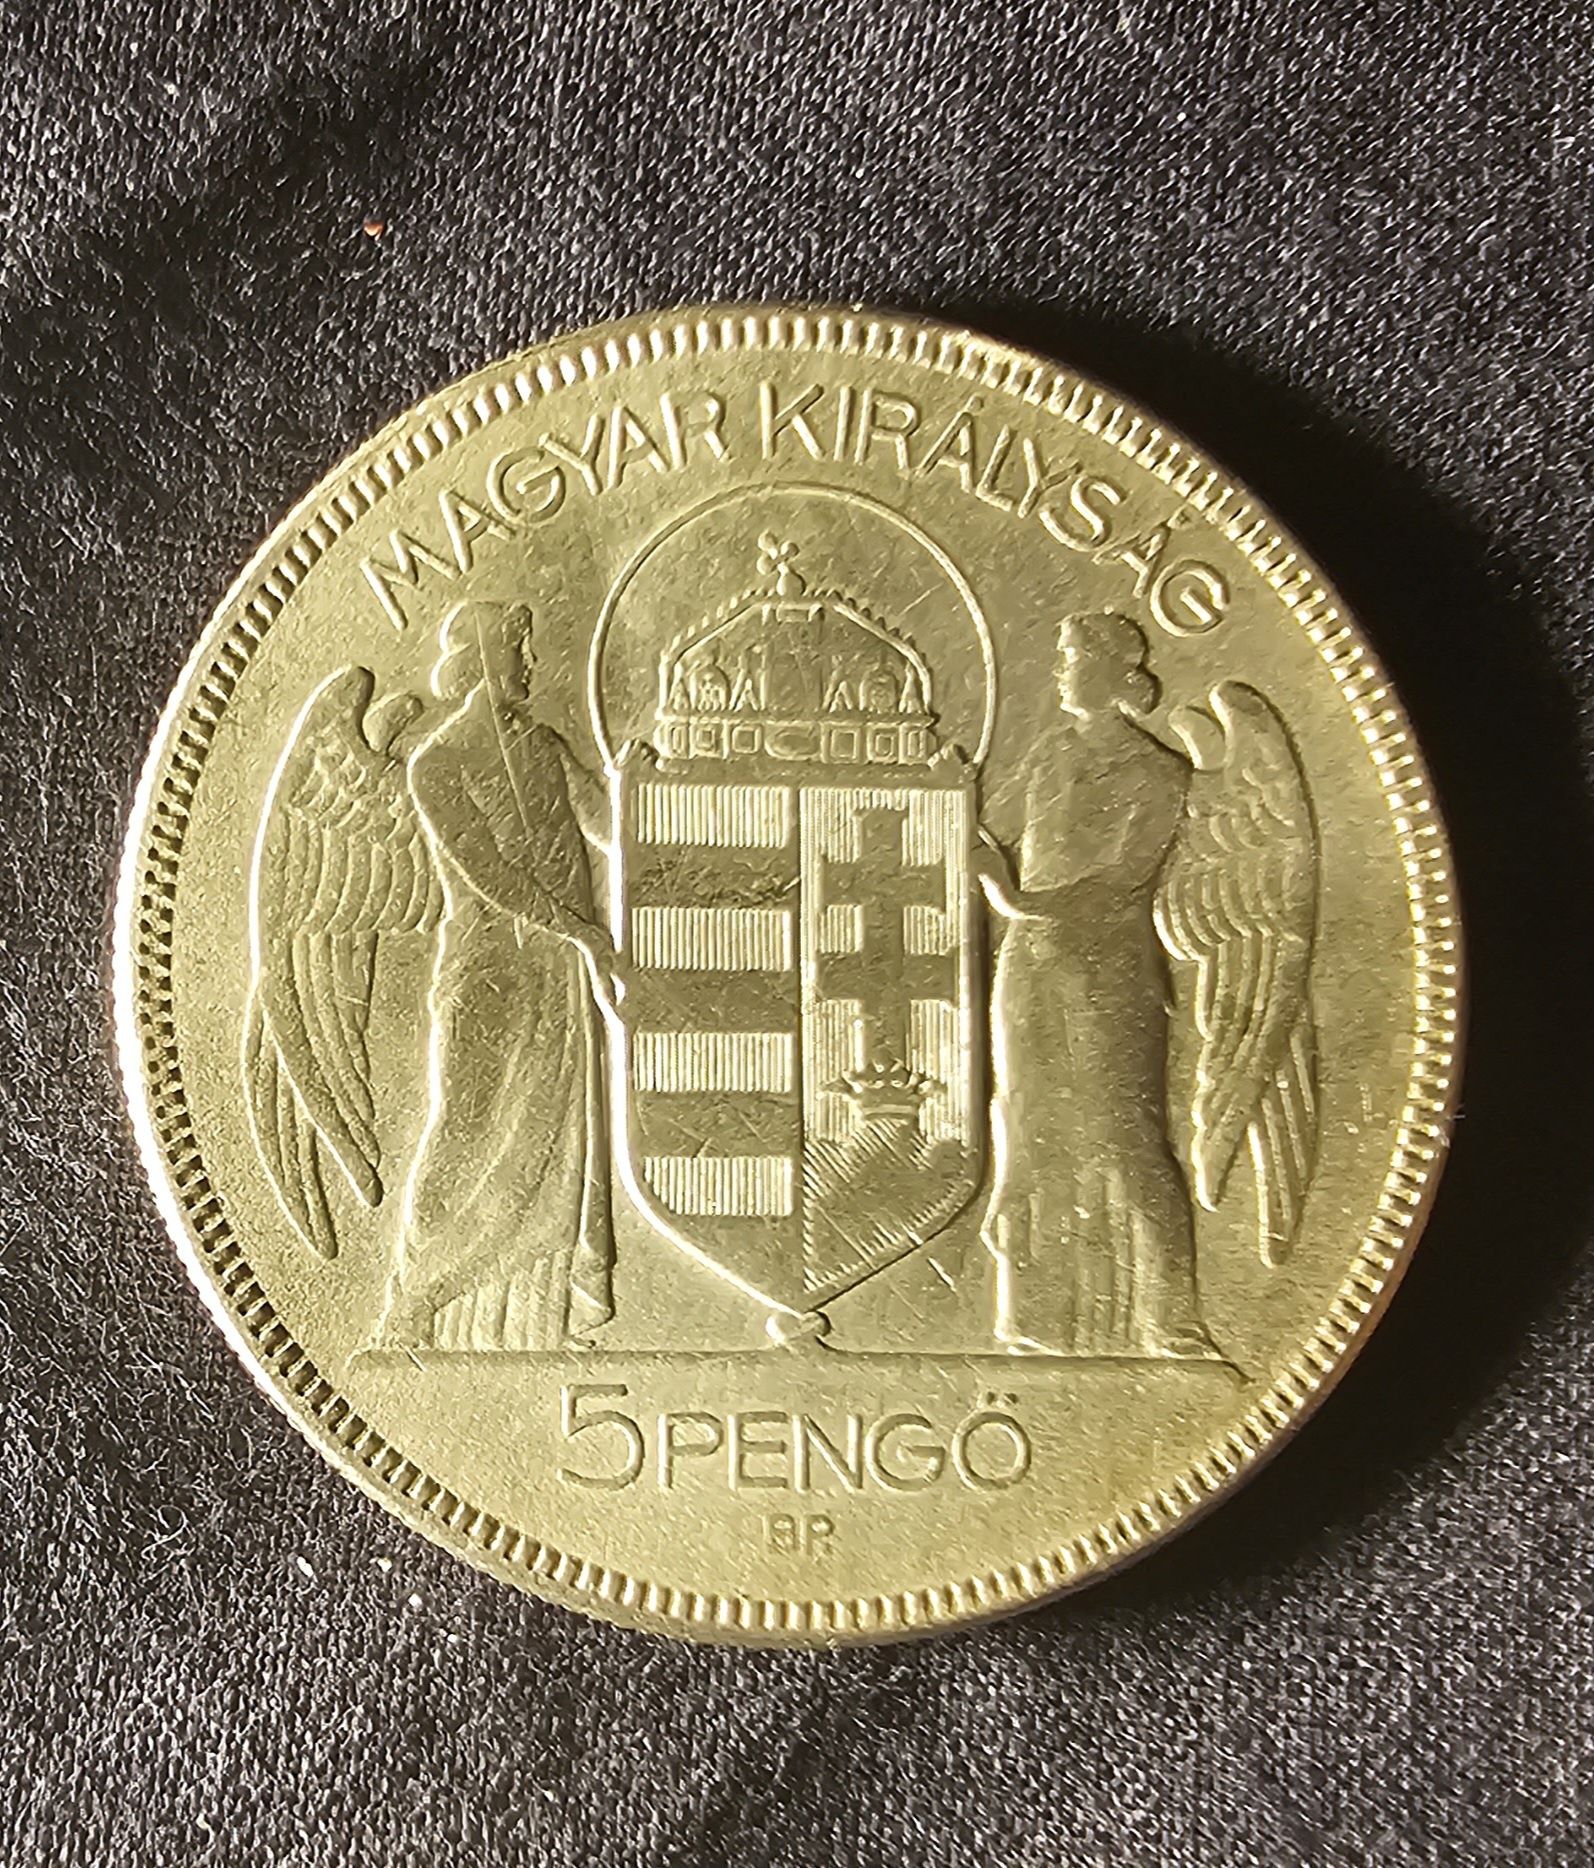 Monede romanesti vechi si una maghiara, 5 pengo  argint, 1930 Horthy